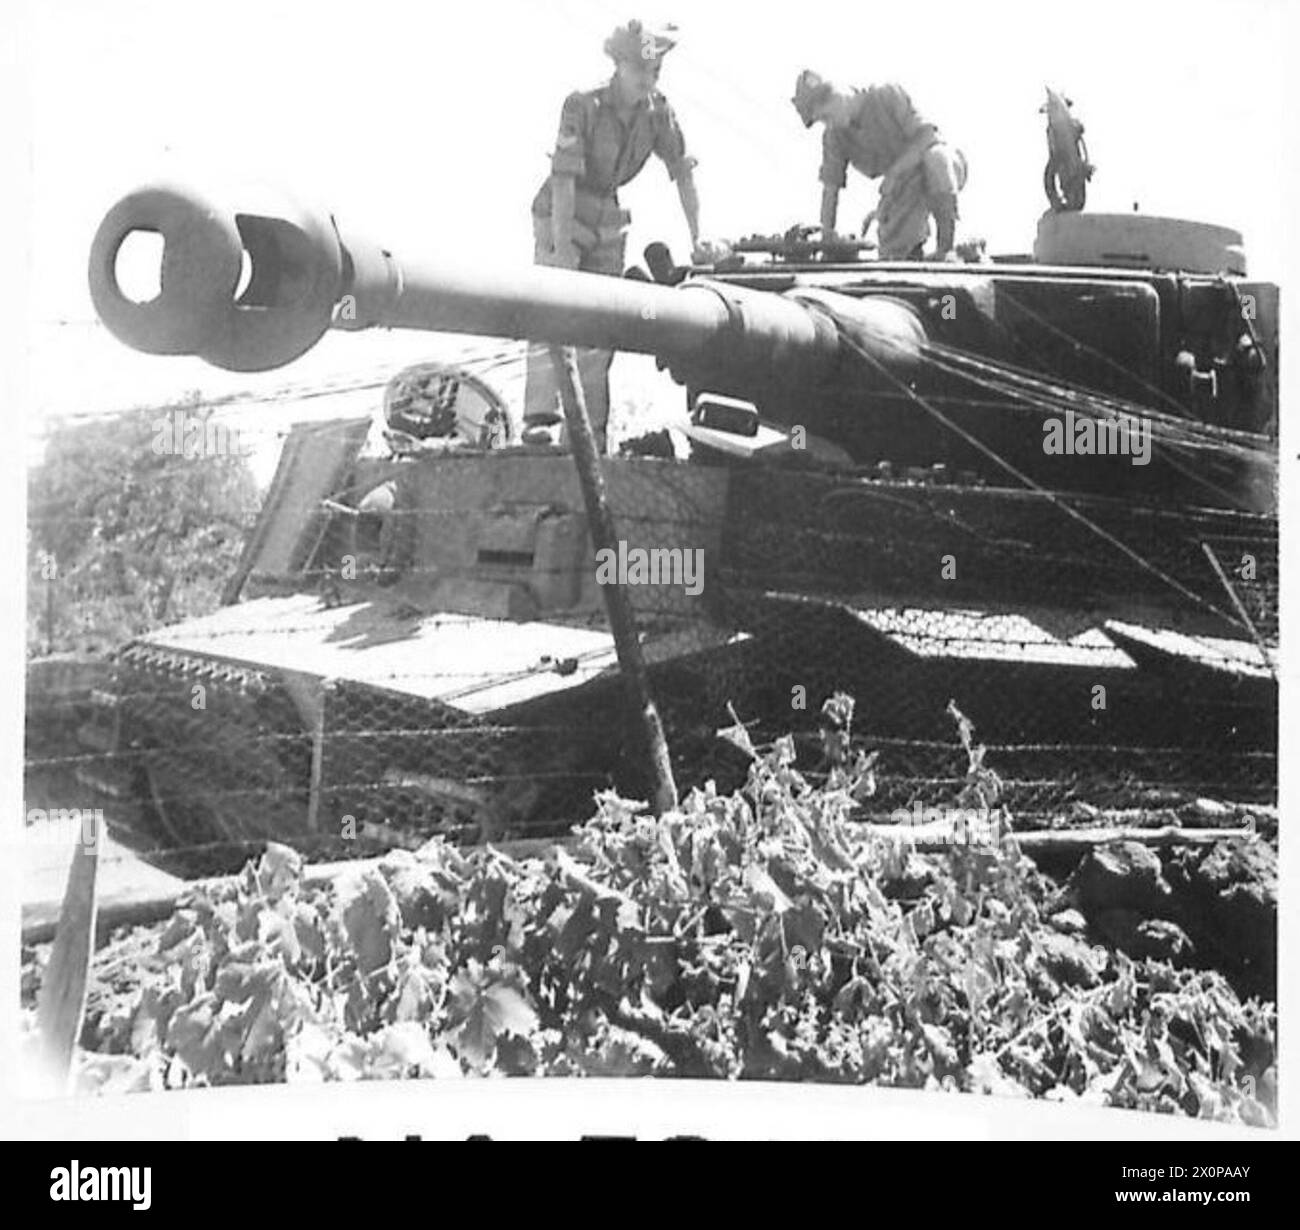 8E ARMÉE AVANCE DANS LE MT. ETNA AREA - Un Tiger Tank allemand Mk. VI retrouvé abandonné et explosé par nos troupes avançant - 152 BDE. 51 Div. - Ces chars sont la dernière "arme secrète" allemande et sont équipés d'un canon de 88 mm sur la tourelle, et pèsent 72 tonnes. La largeur de ce char est telle que sur les routes de barrow de Sicile son utilisation a été limitée. Photos prises près de Pisano. Négatif photographique, Armée britannique Banque D'Images